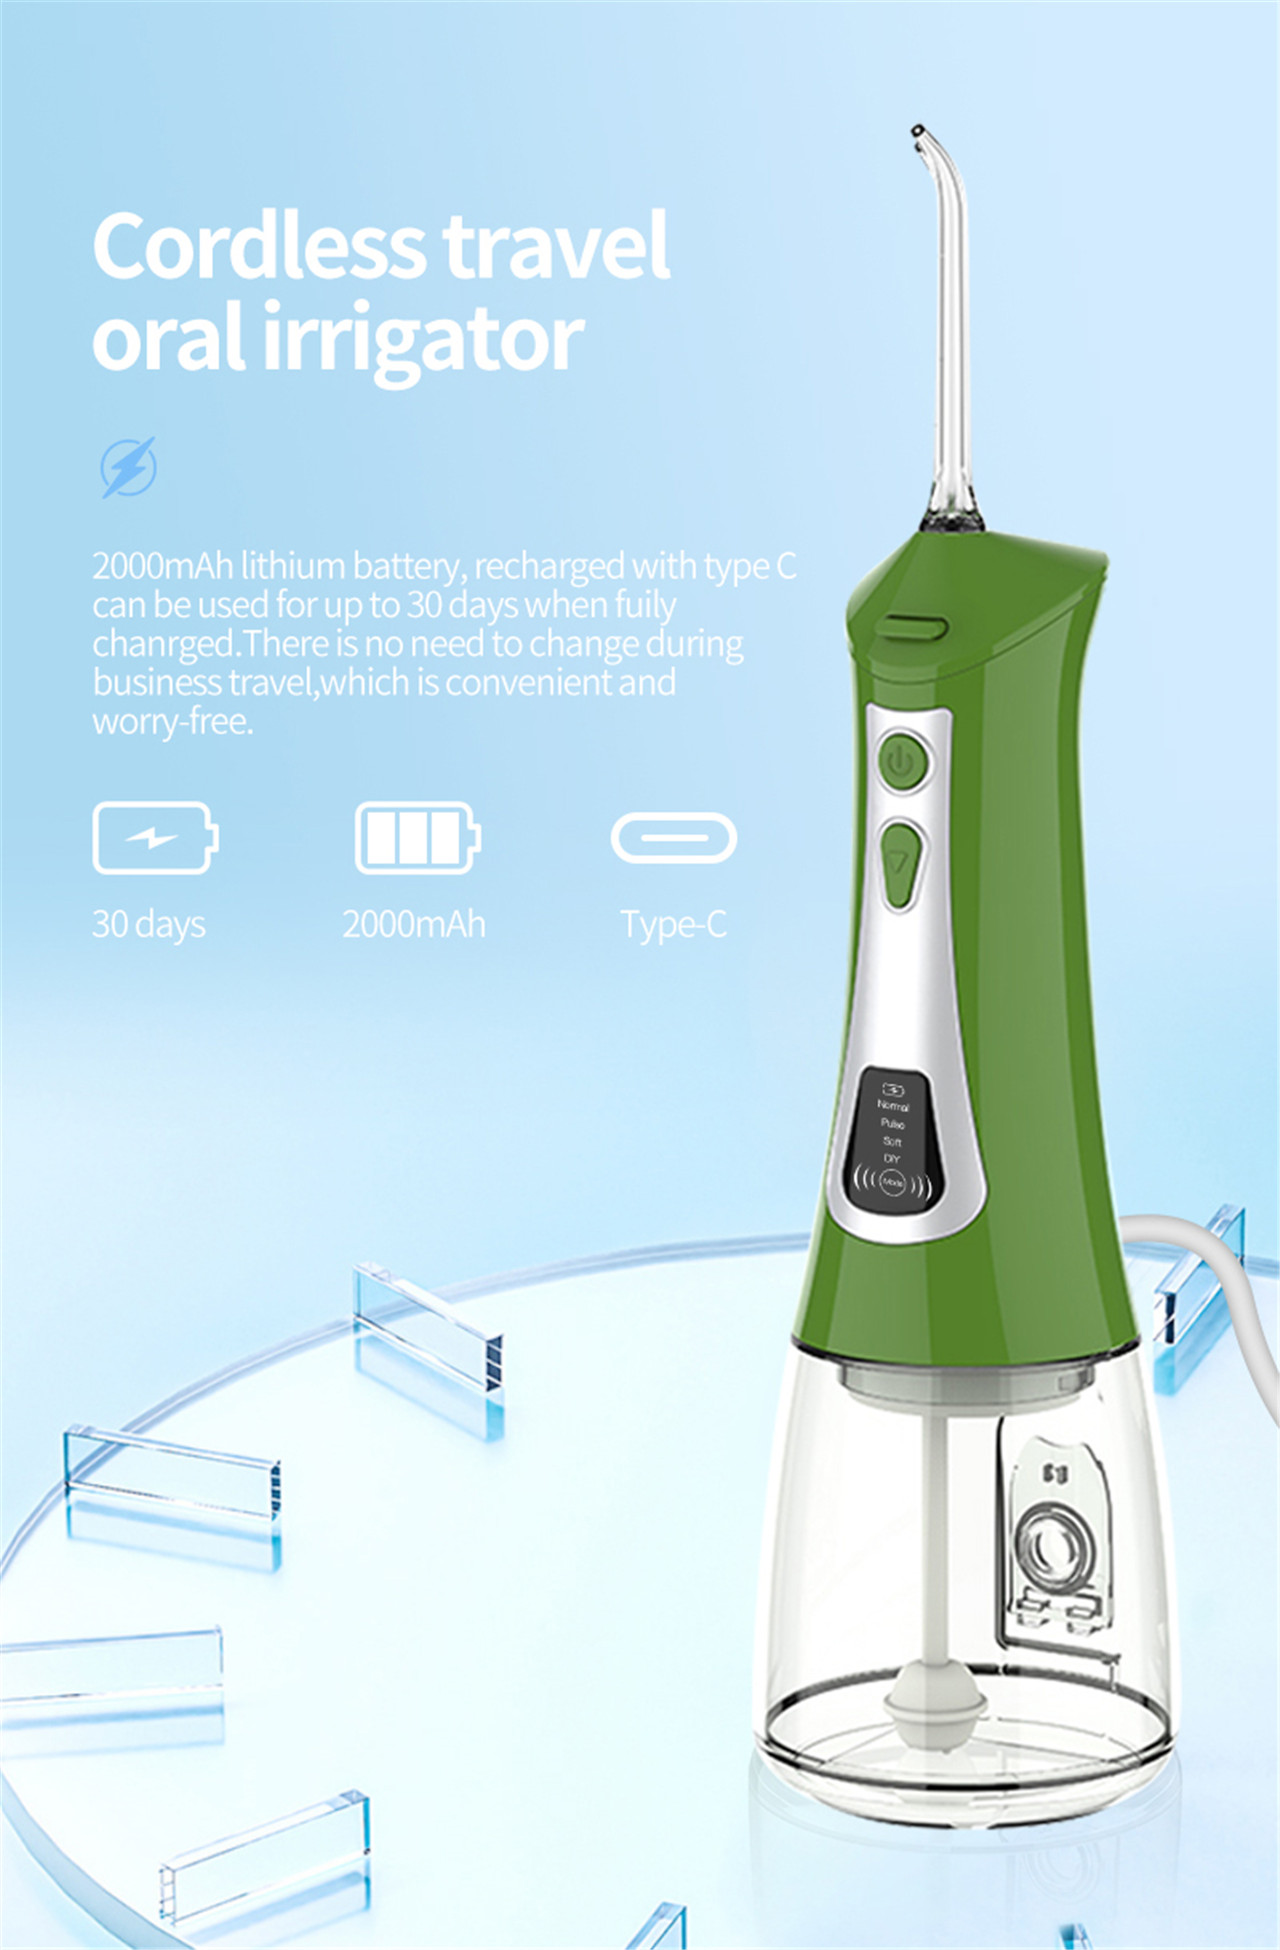 OLED-skerm mondbesproeier waterplukker vir tande bleek (6)